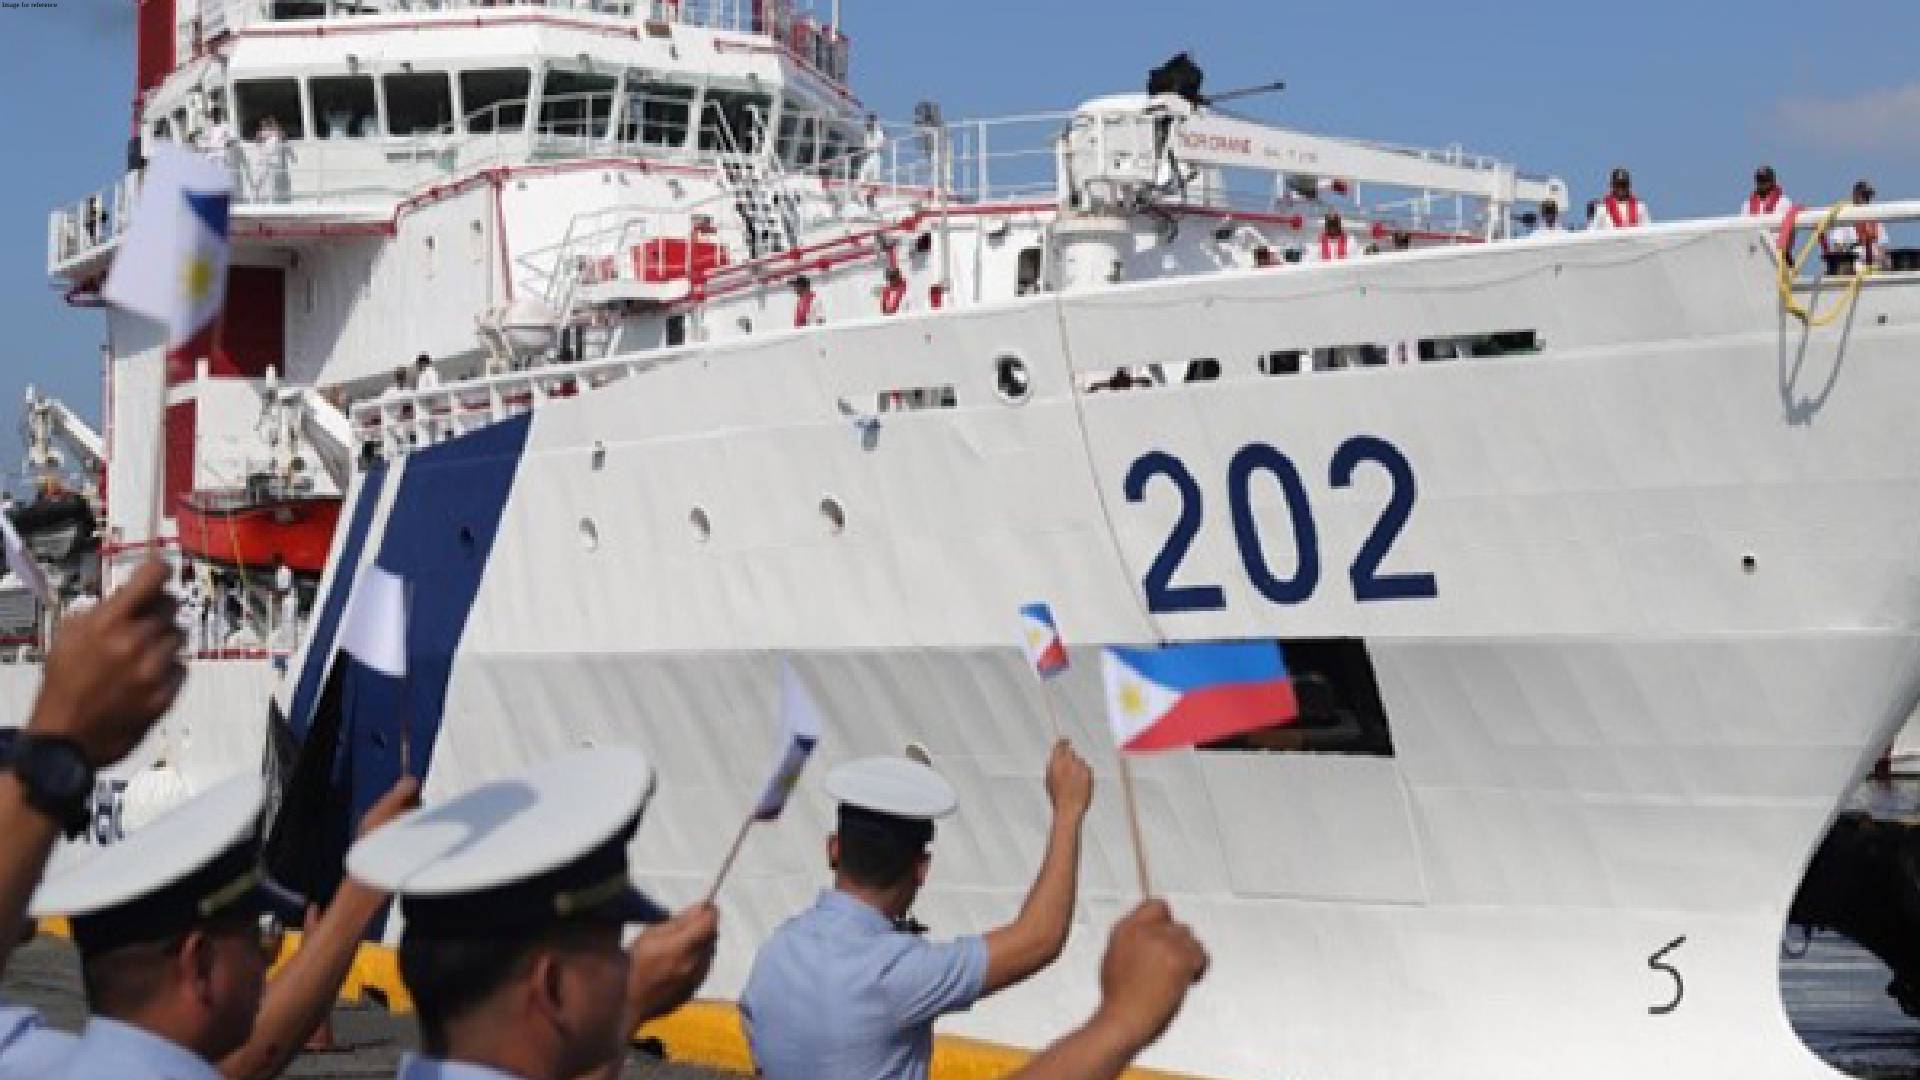 Indian Coast Guard ship docks at Manila port amid tensions in South China Sea